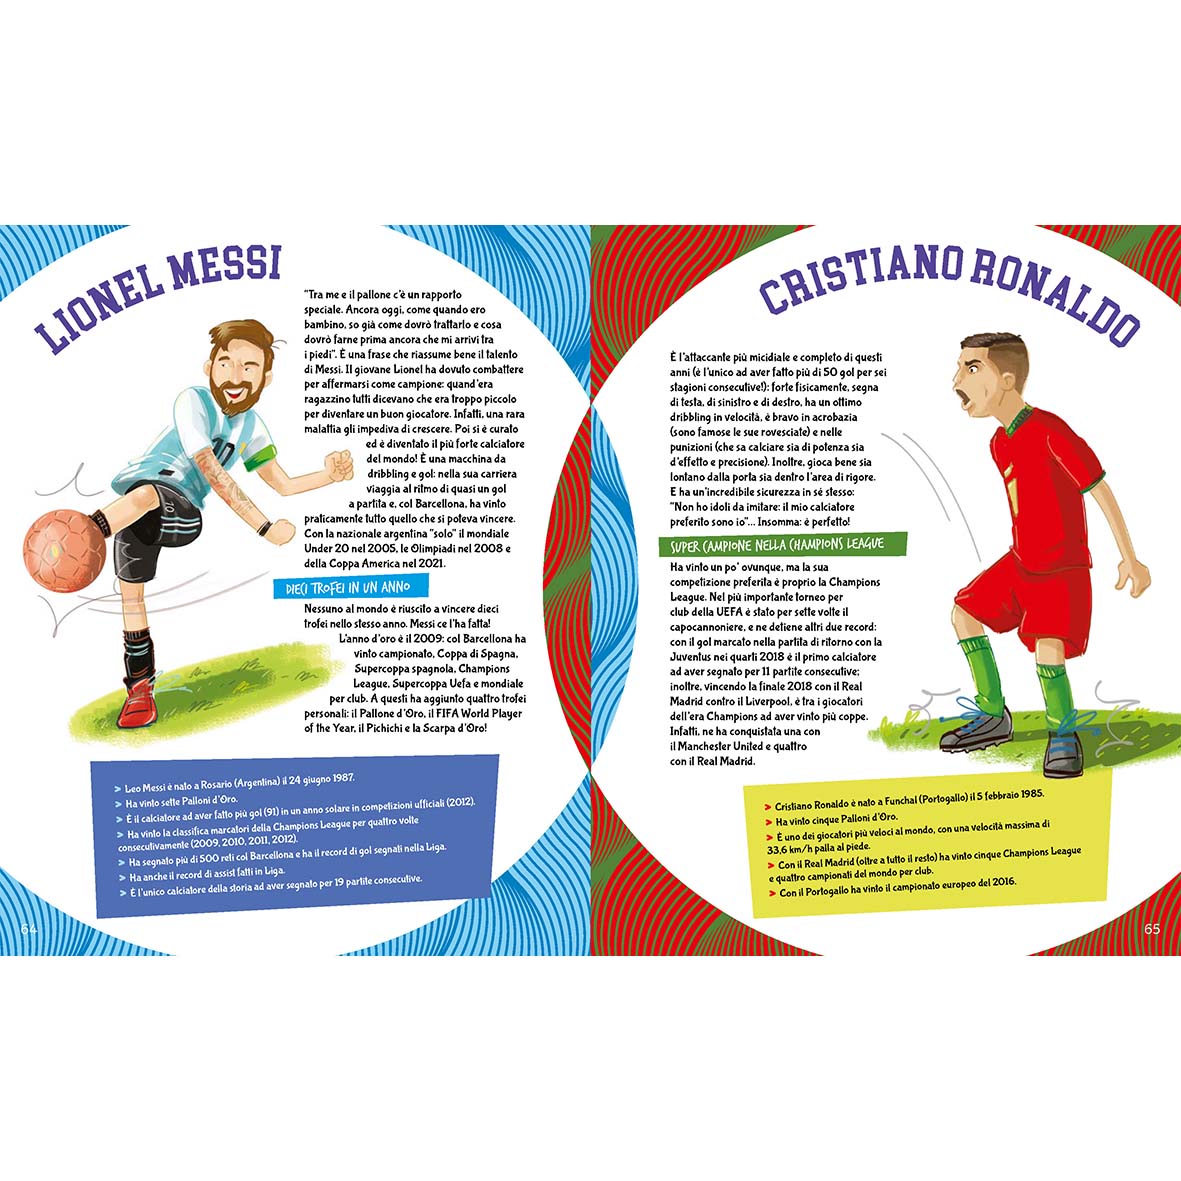 Il calcio spiegato ai bambini - piccola guida illustrata (nuova edizione 2023)